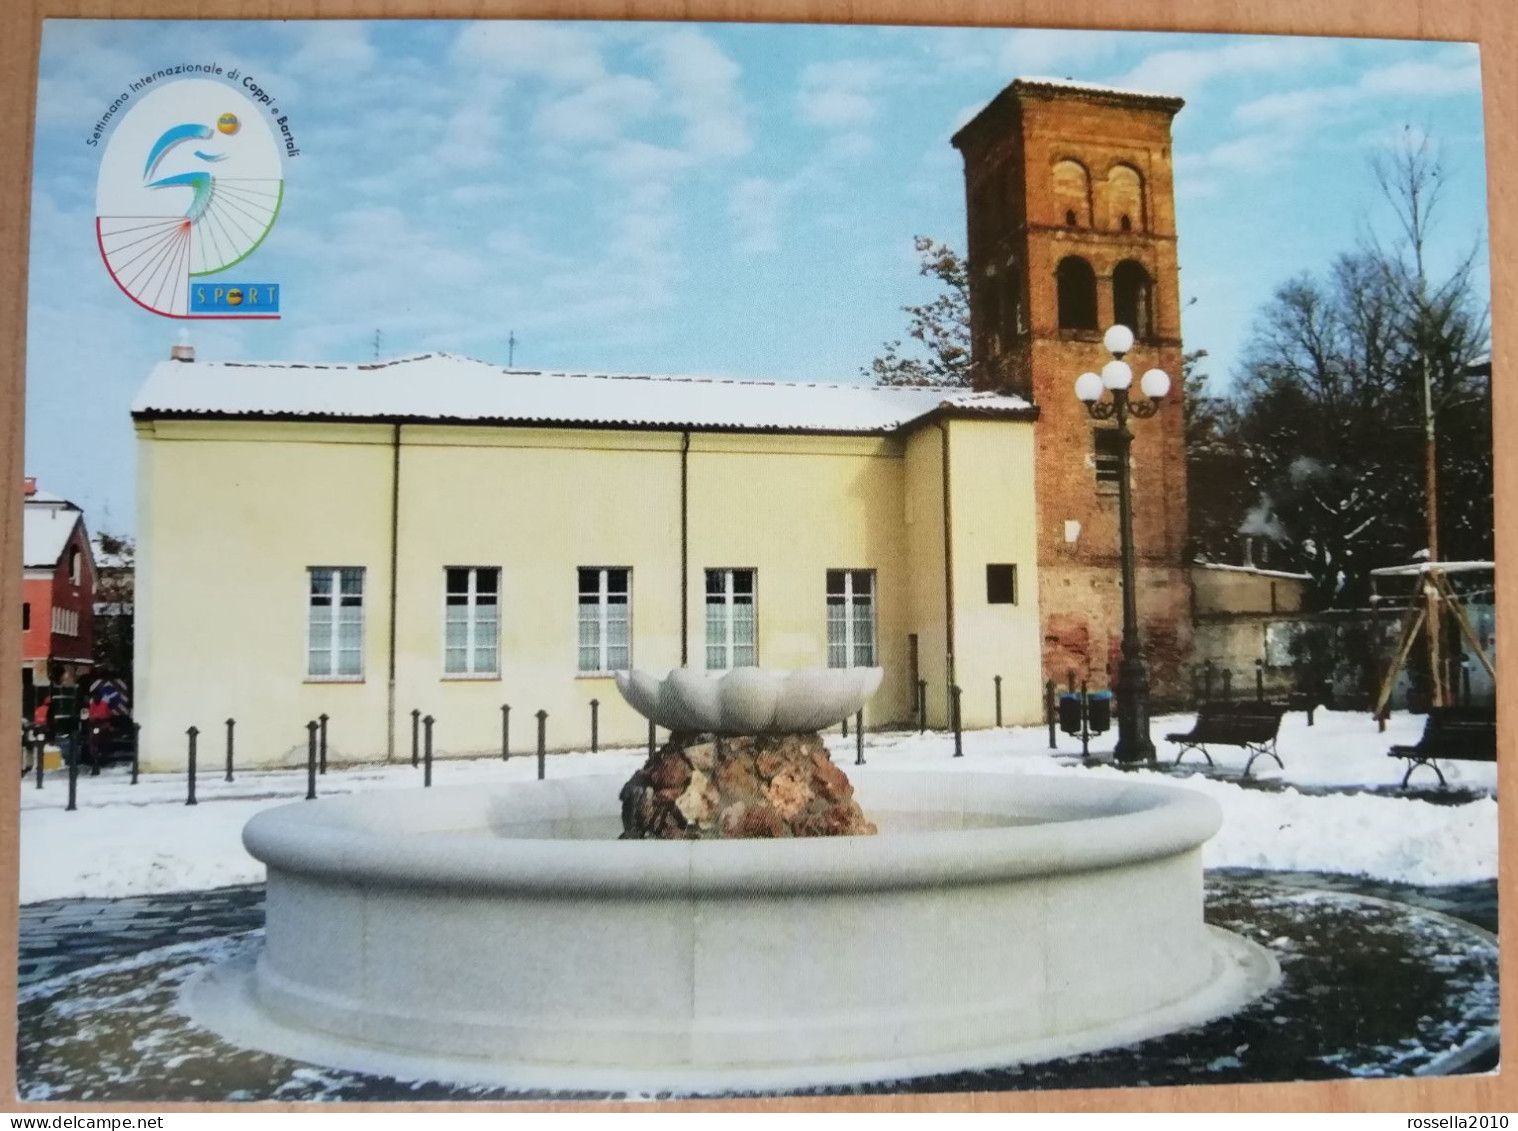 CARTOLINA CICLISMO ITALIA SASSUOLO 2003 SETTIMANA INTERNAZIONALE DI COPPI BARTALI Italy Postcard ITALIEN Ansichtskarten - Manifestazioni